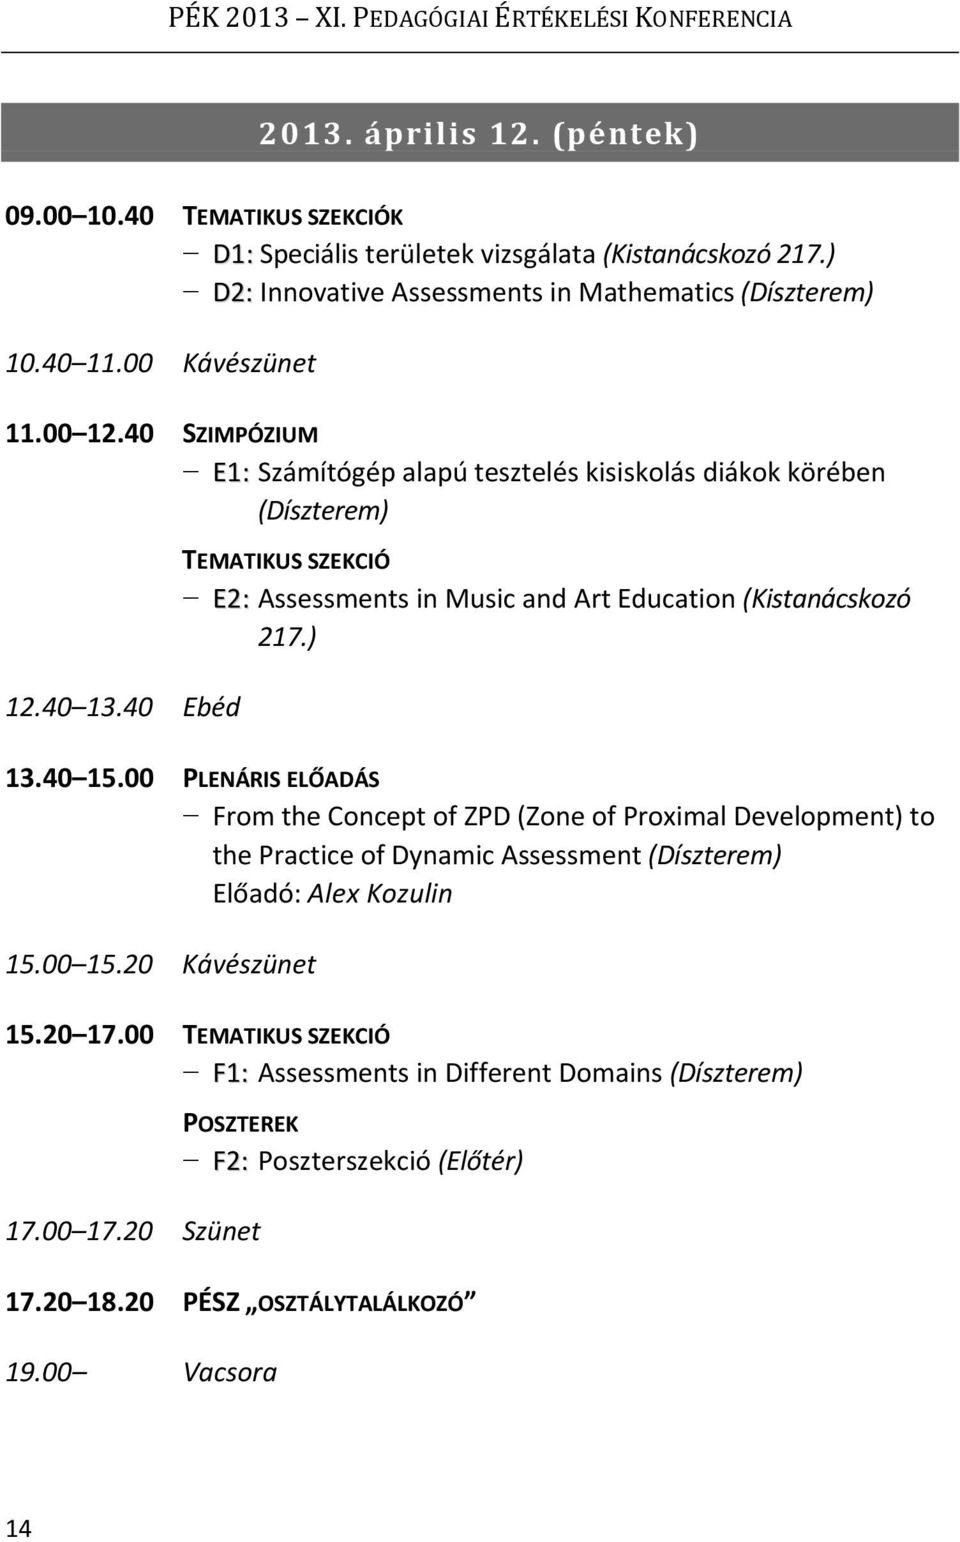 40 Ebéd TEMATIKUS SZEKCIÓ E2: Assessments in Music and Art Education (Kistanácskozó 217.) 13.40 15.